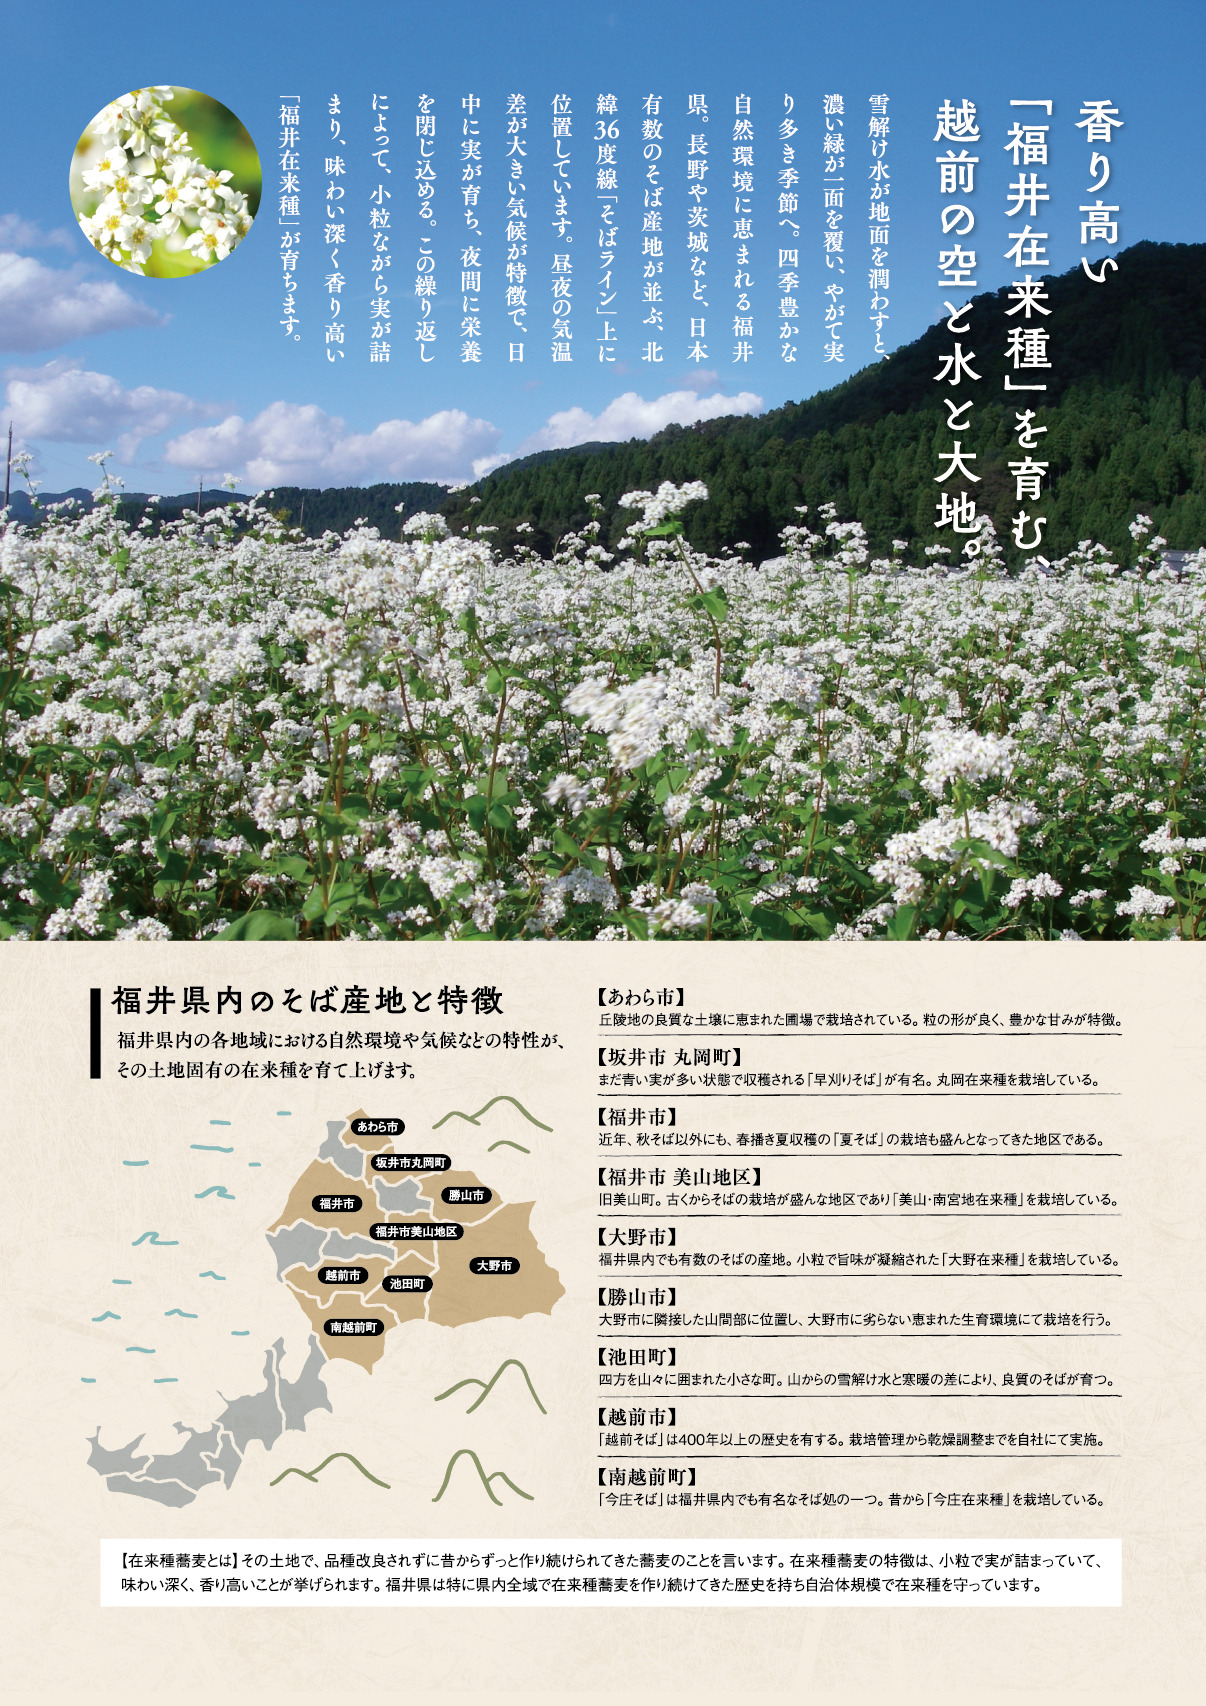 香り高い『福井県在来種』を育む、越前の空と水と大地。福井県内のそば産地と特徴。